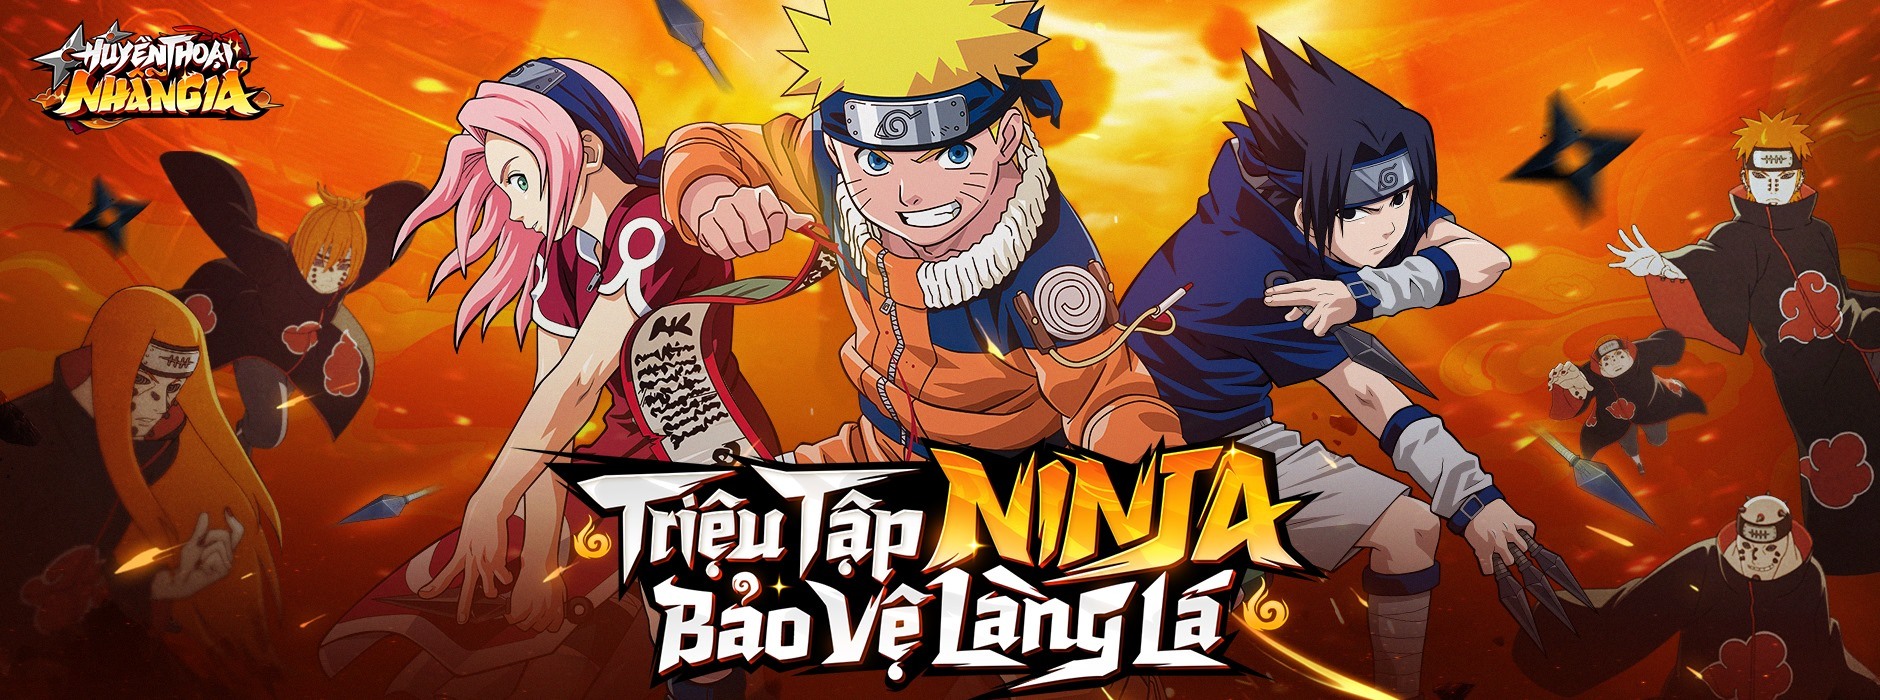 Huyền Thoại Nhẫn Giả: Thêm một game mobile đề tài Naruto chuẩn bị ra mắt